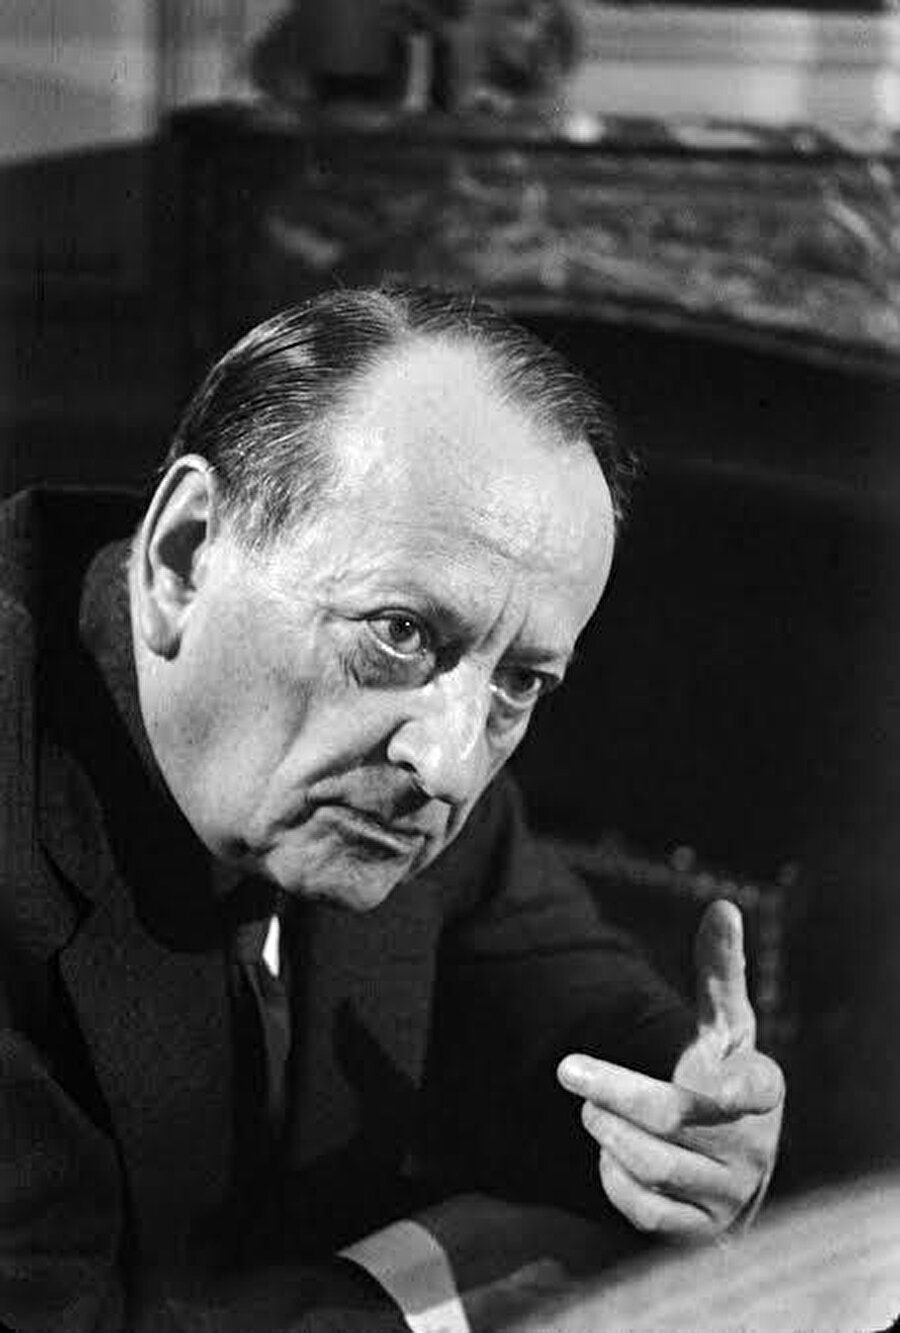 “Bana Fransız André Malraux’yu örnek veriyorlar. Filistin’in Fransa kadar büyük bir devlet ve Arafat’ın da De Gaulle olduğu dönemlere gelsek bile, ben Malraux değil, Jean Paul Sartre olmayı tercih ederim” 